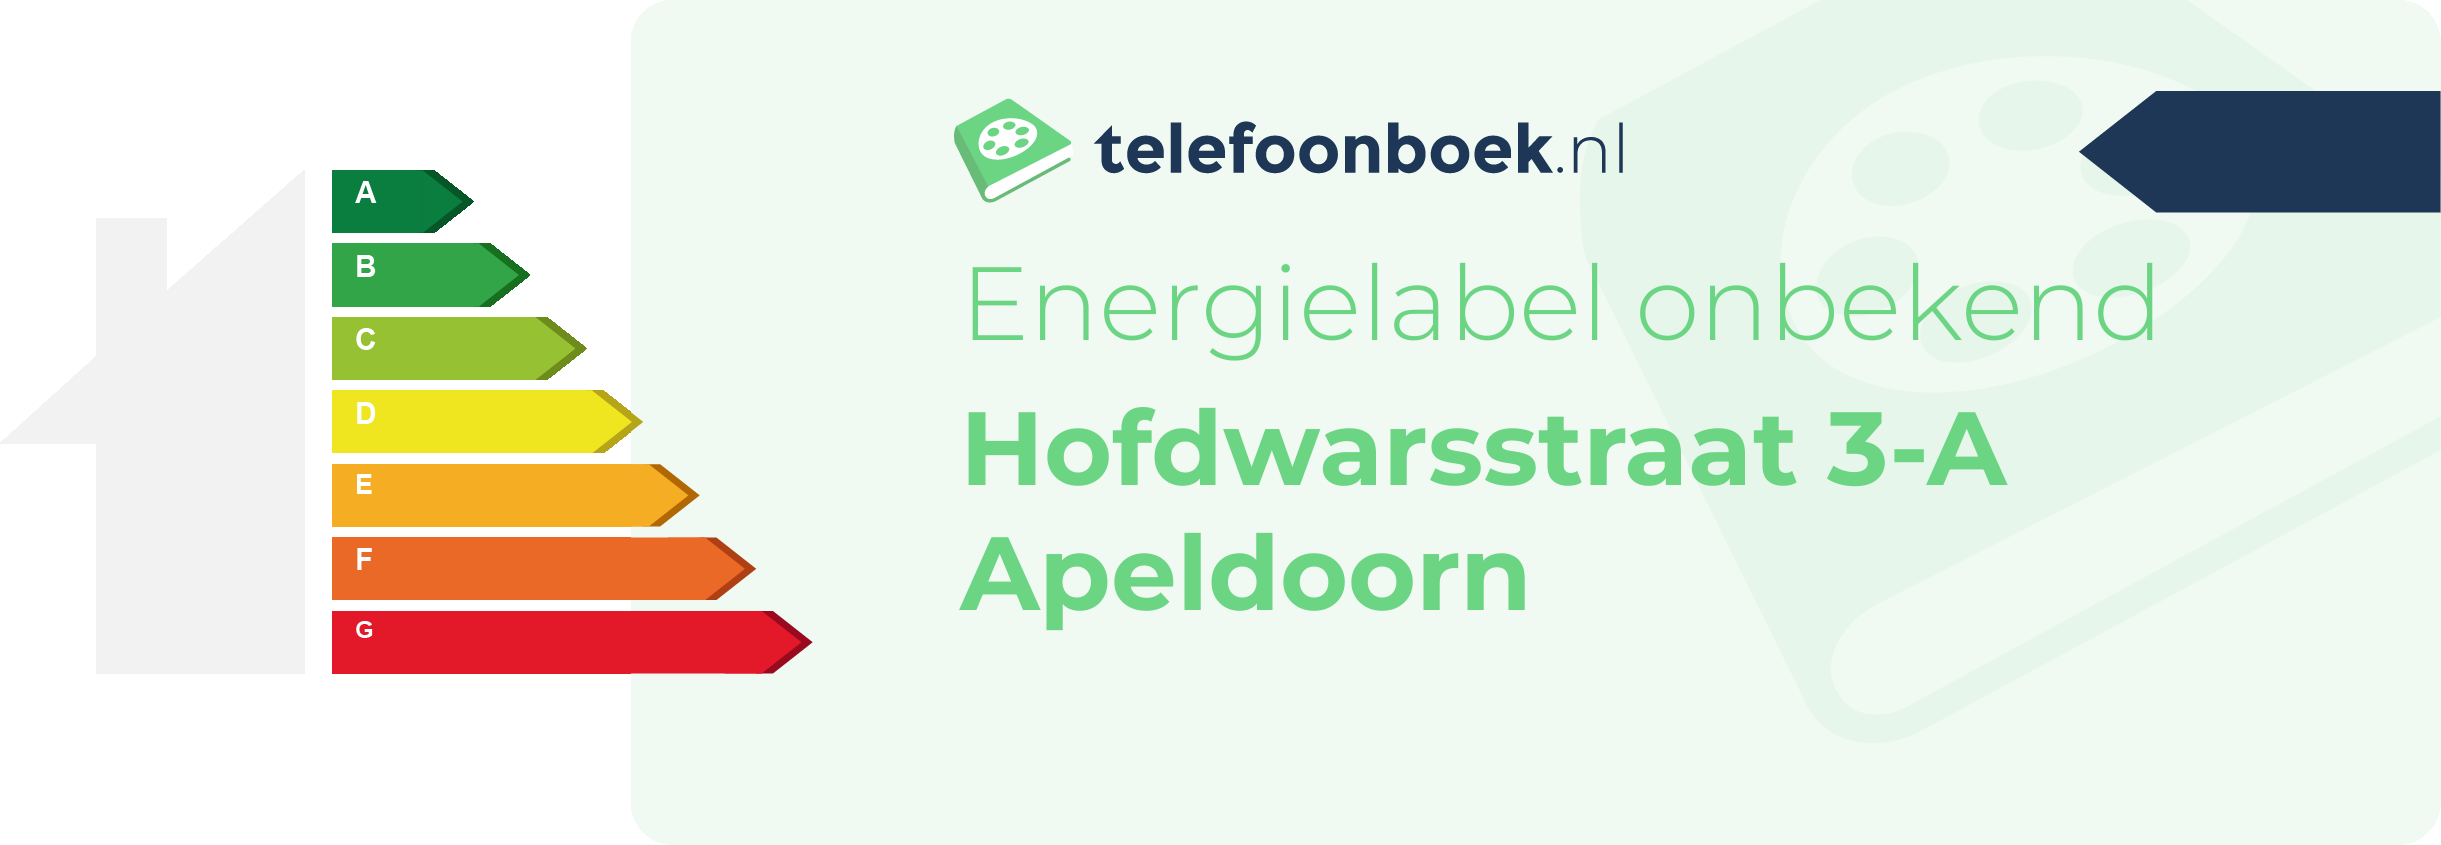 Energielabel Hofdwarsstraat 3-A Apeldoorn